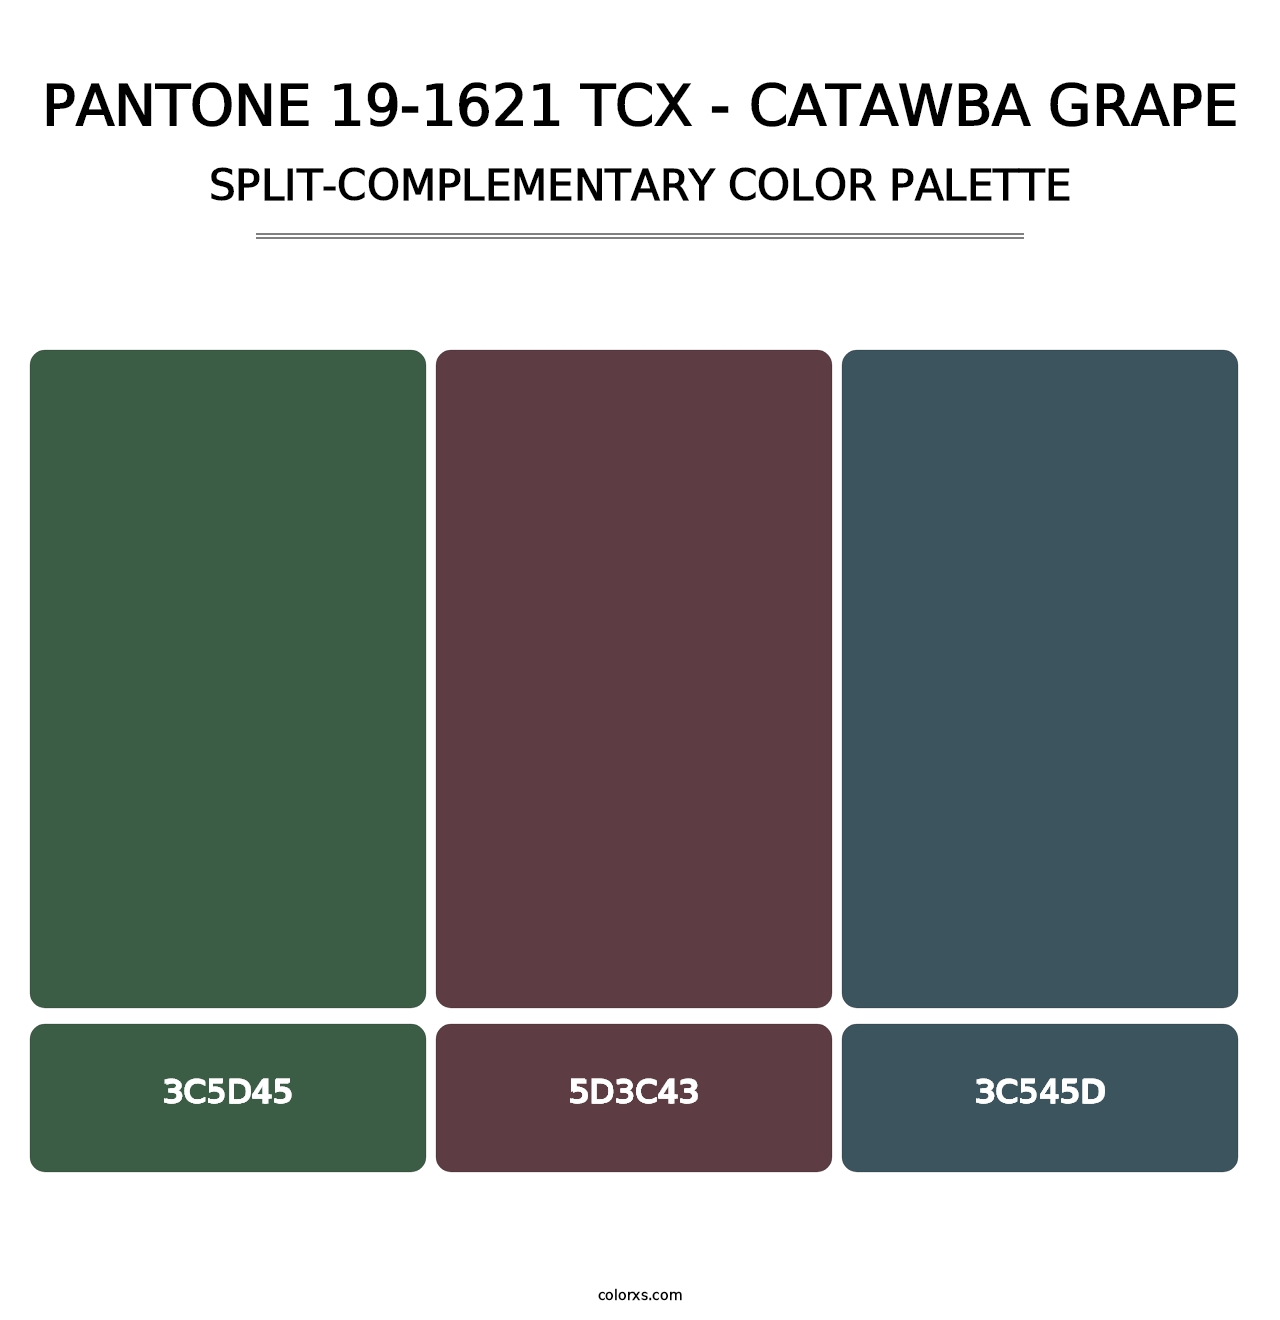 PANTONE 19-1621 TCX - Catawba Grape - Split-Complementary Color Palette